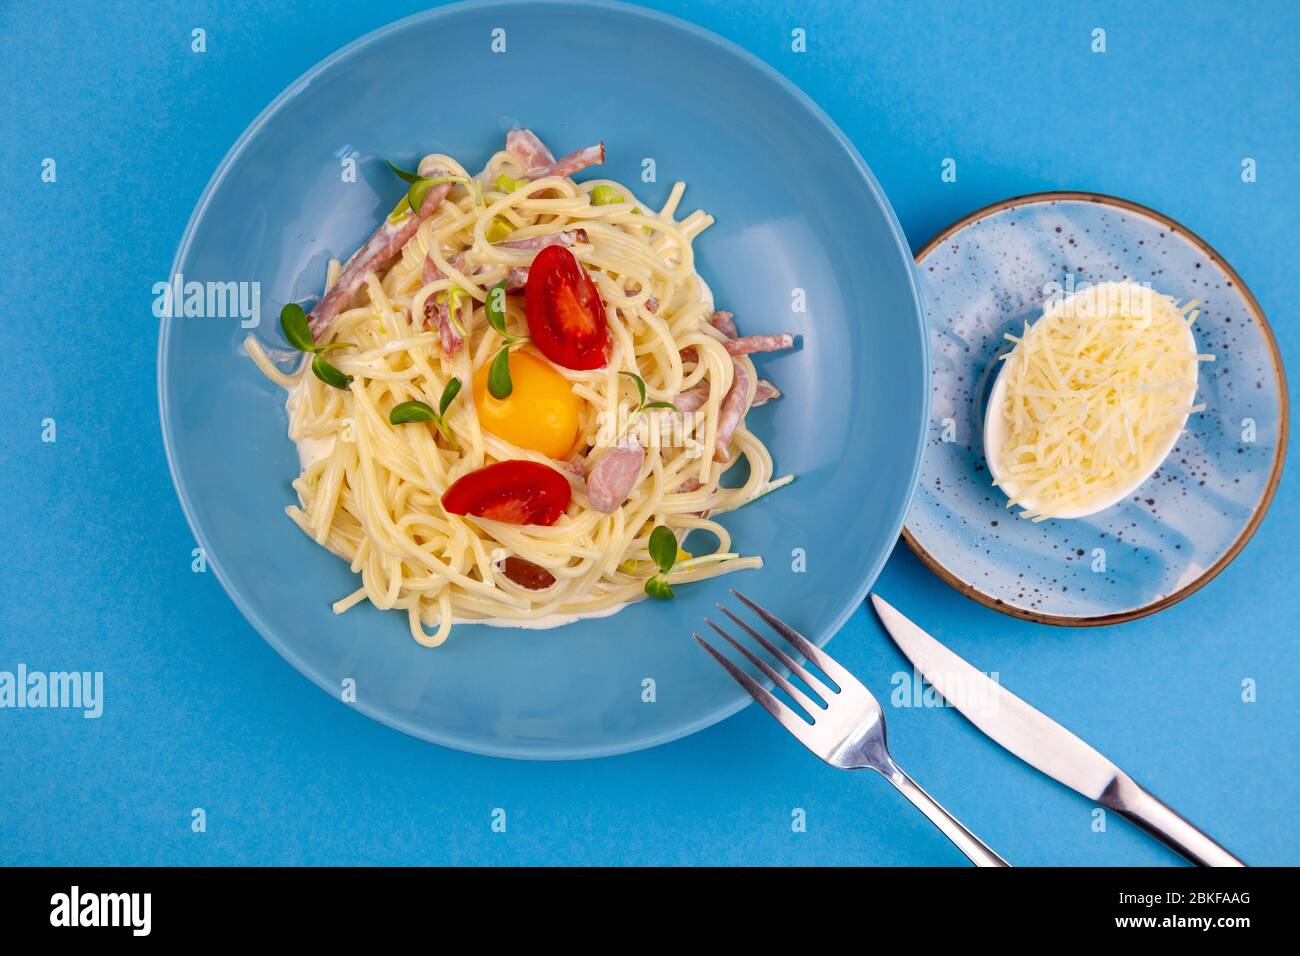 Pâtes Carbonara - spaghetti avec petits morceaux de bacon, mélangés avec une sauce aux œufs et au parmesan. Plaque bleue sur fond bleu. Macanons avec œuf Banque D'Images